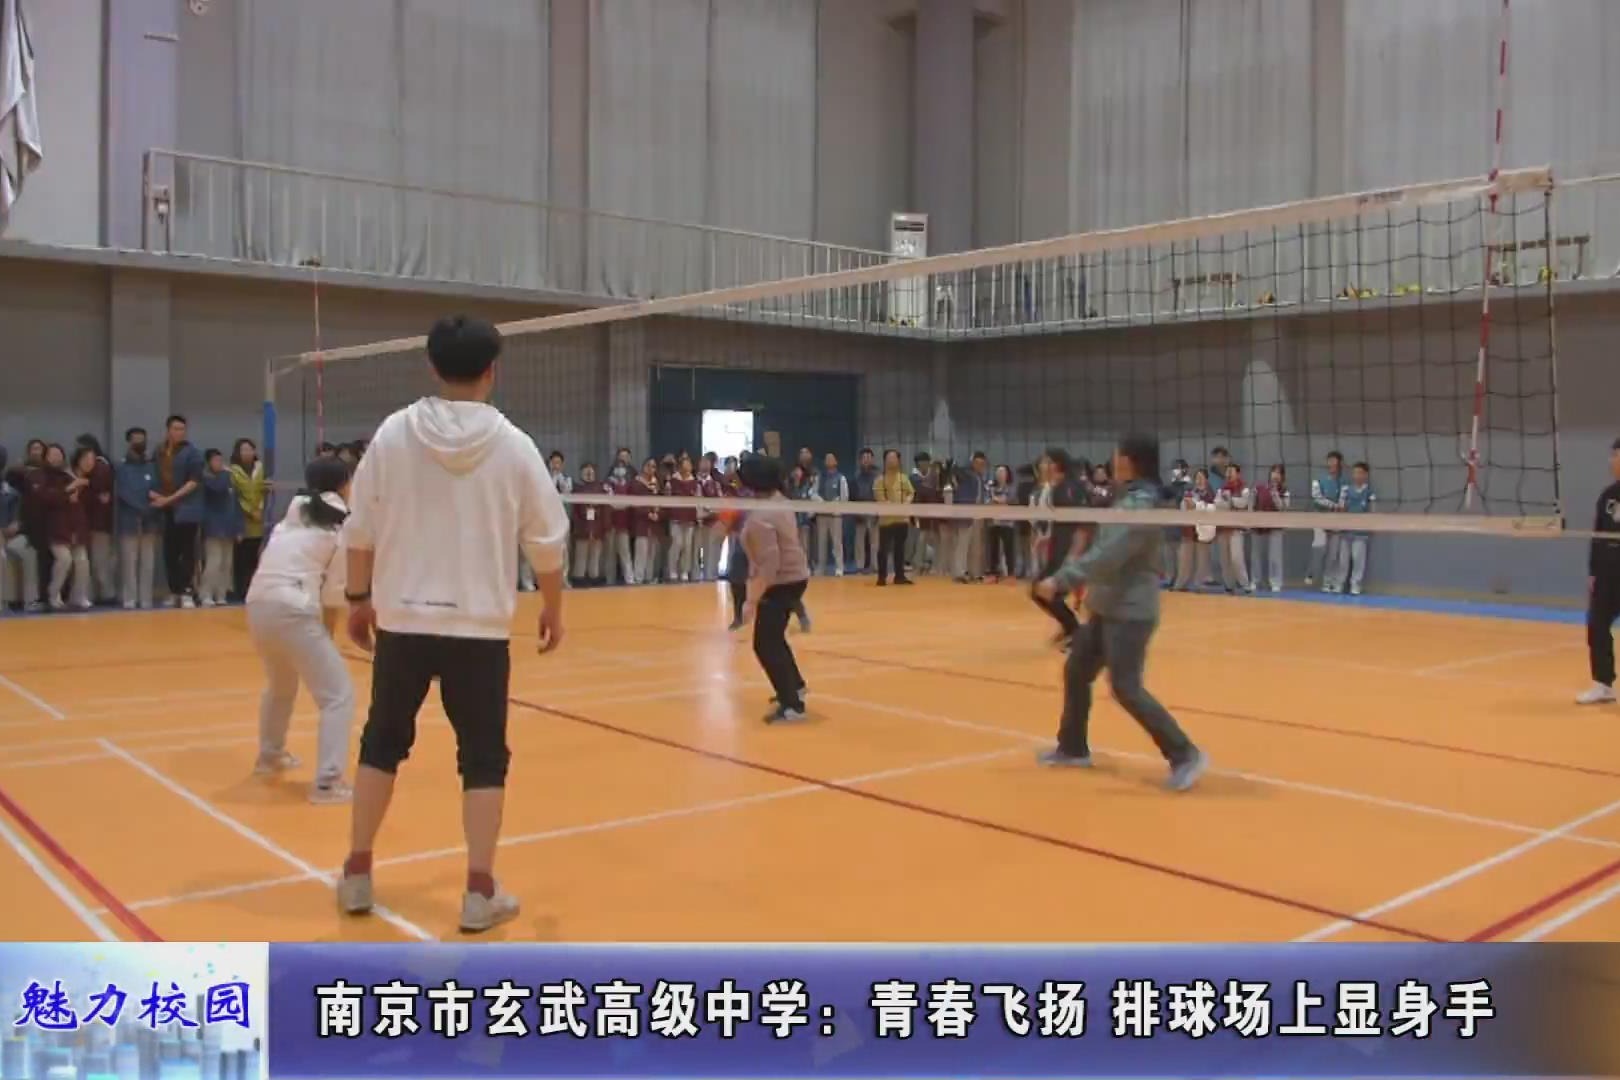 动态丨南京市玄武高级中学:青春飞扬 排球场上显身手